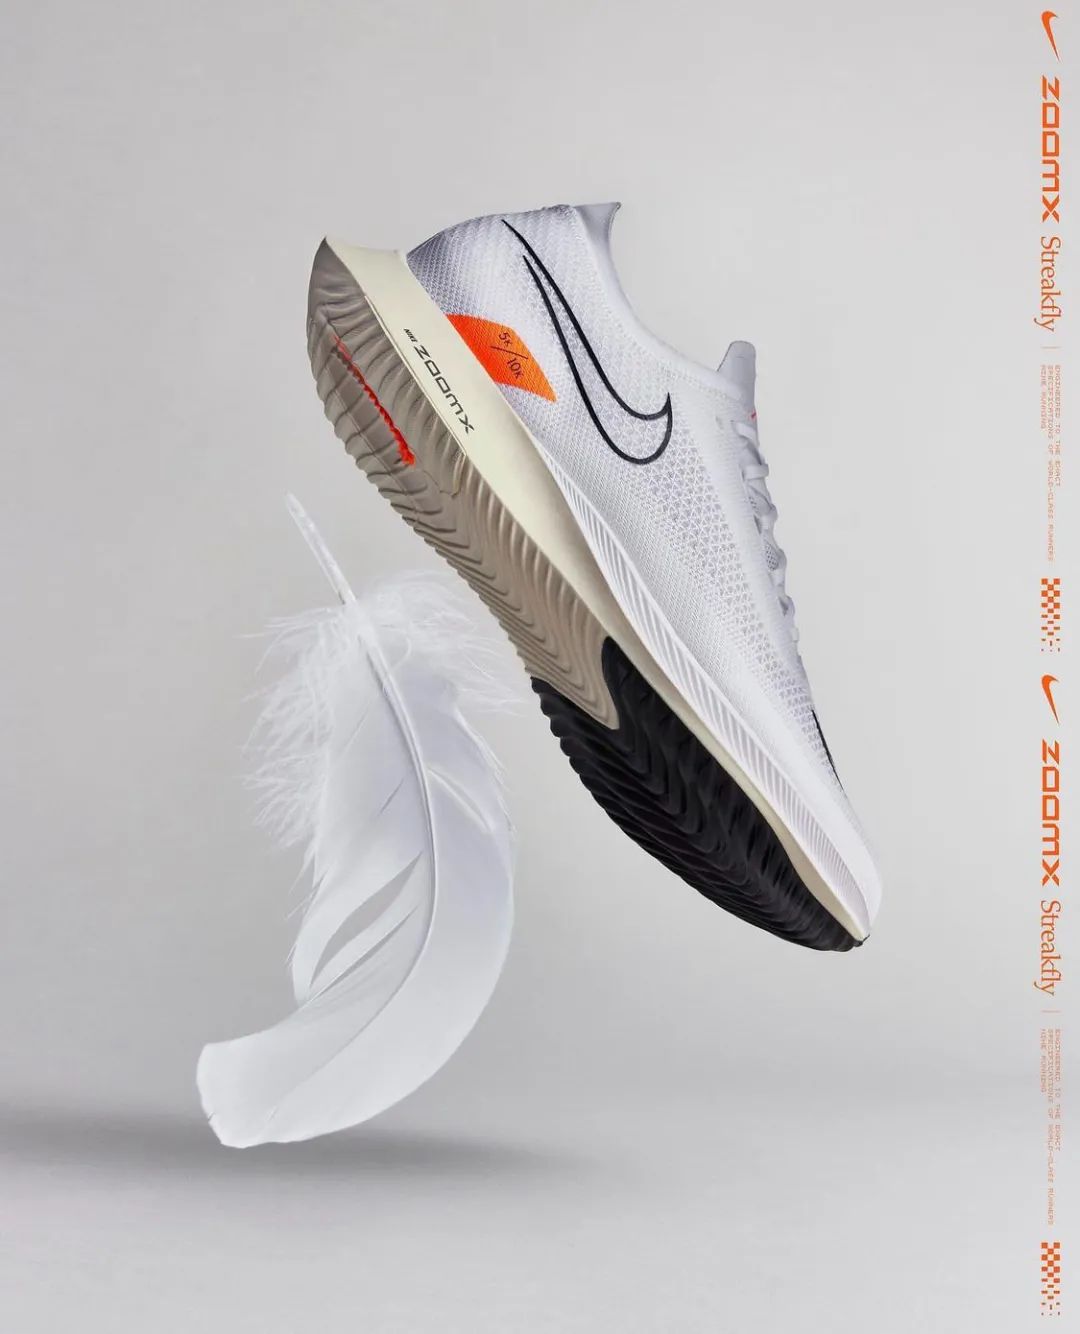 首发｜全新 Nike 竞速鞋款 Streakfly，Vaprofly Next% 与 Alphyfly Next% 的接班者？